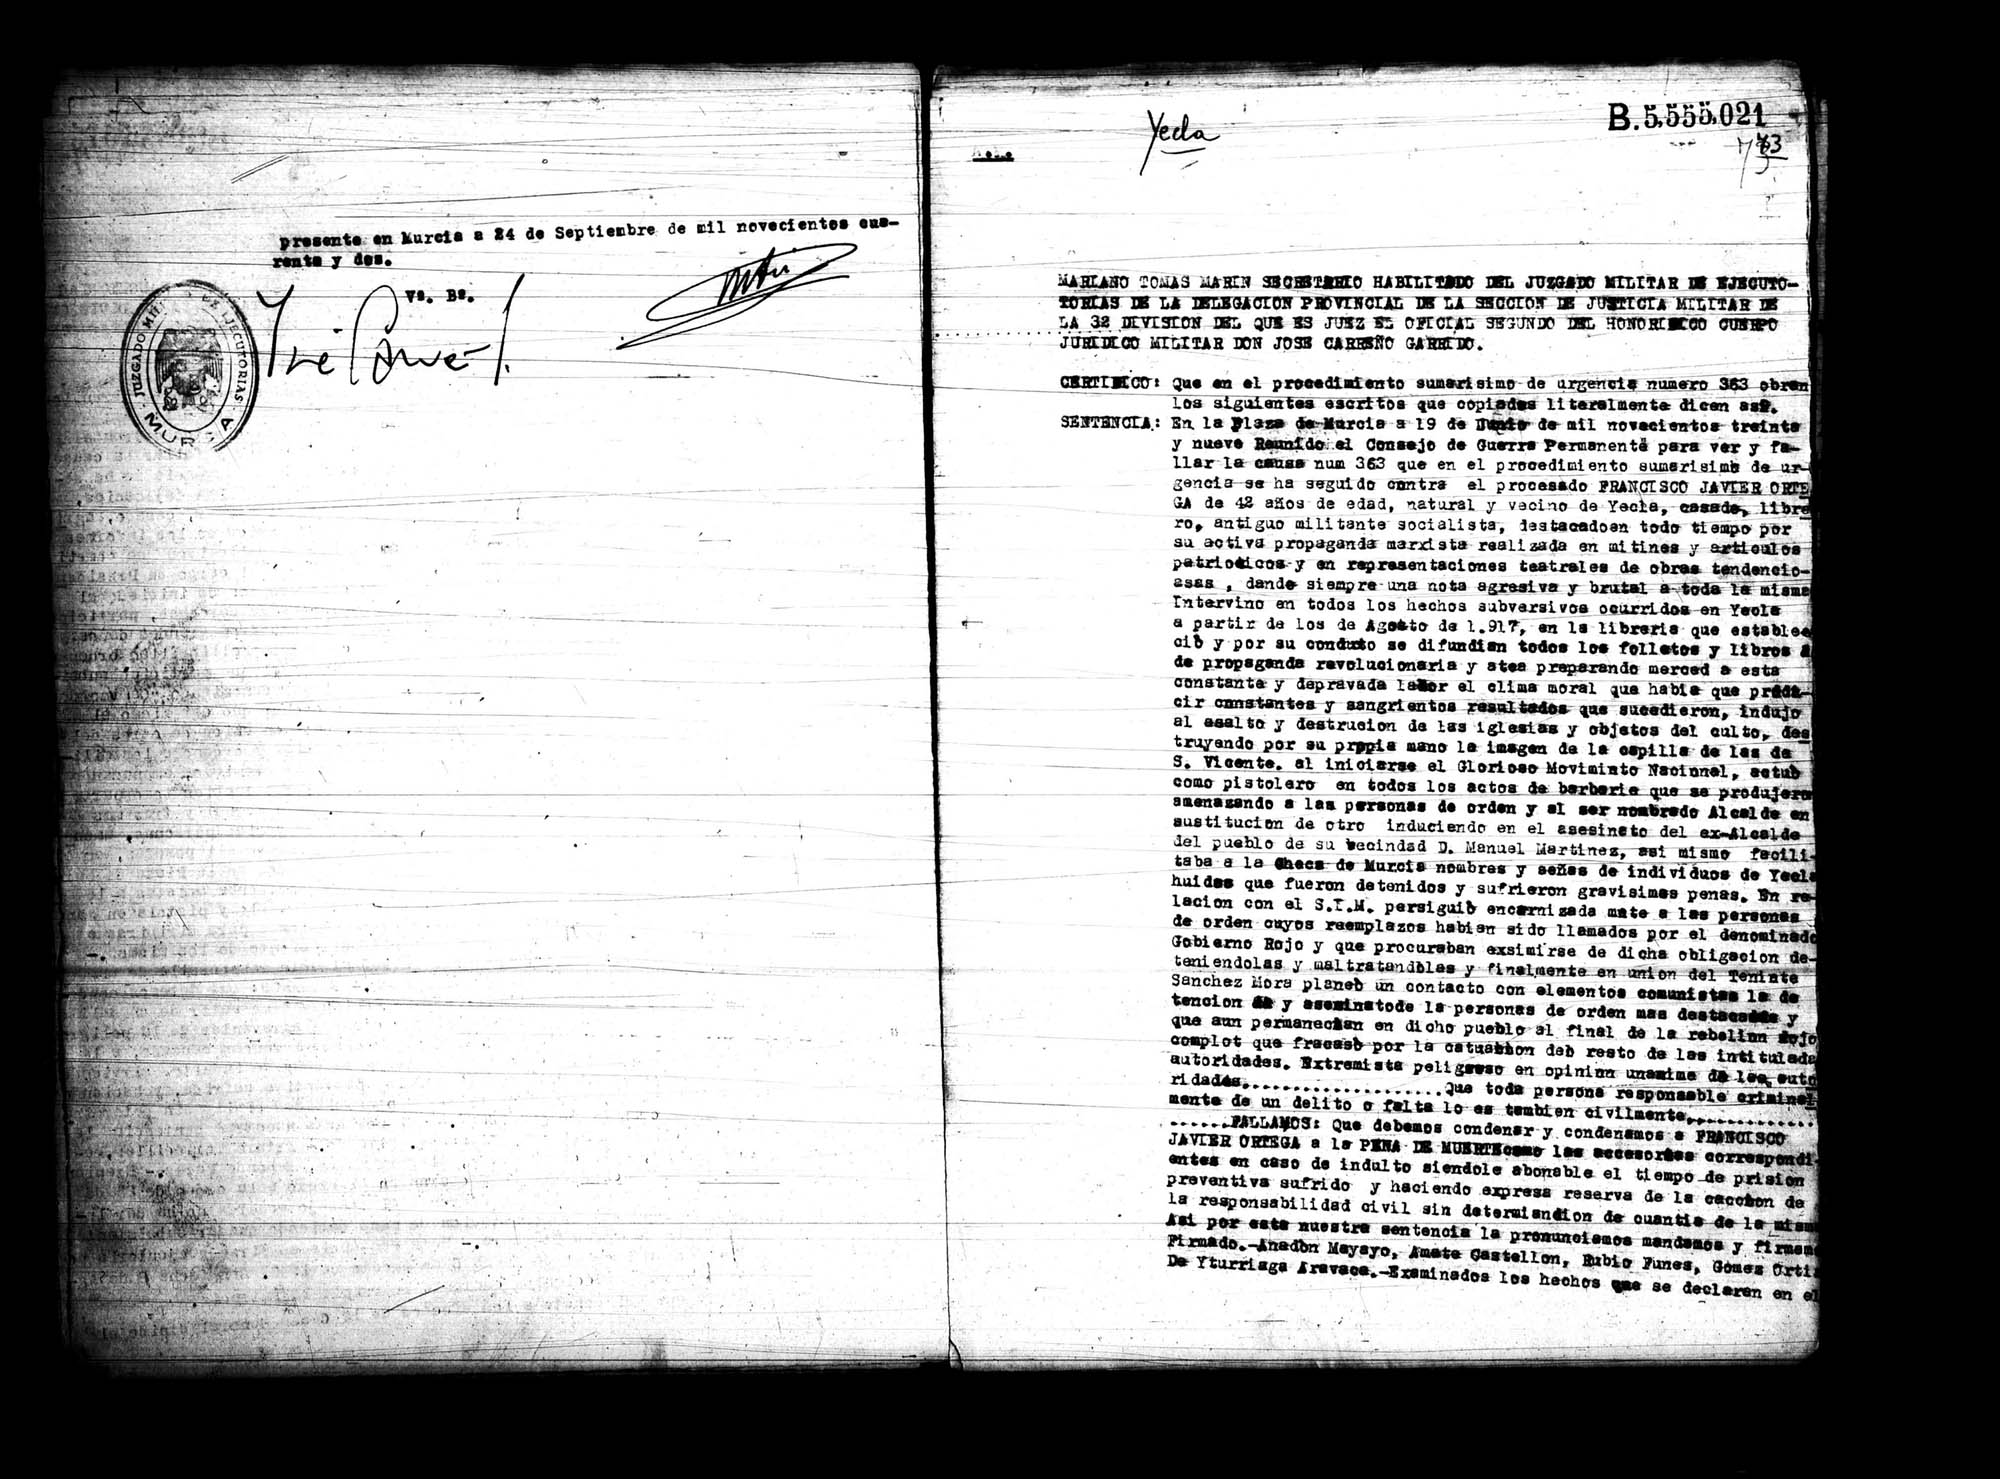 Certificado de la sentencia pronunciada contra Antonio Iniesta Espinosa, causa  83, el 24 de septiembre de 1942 en Murcia.